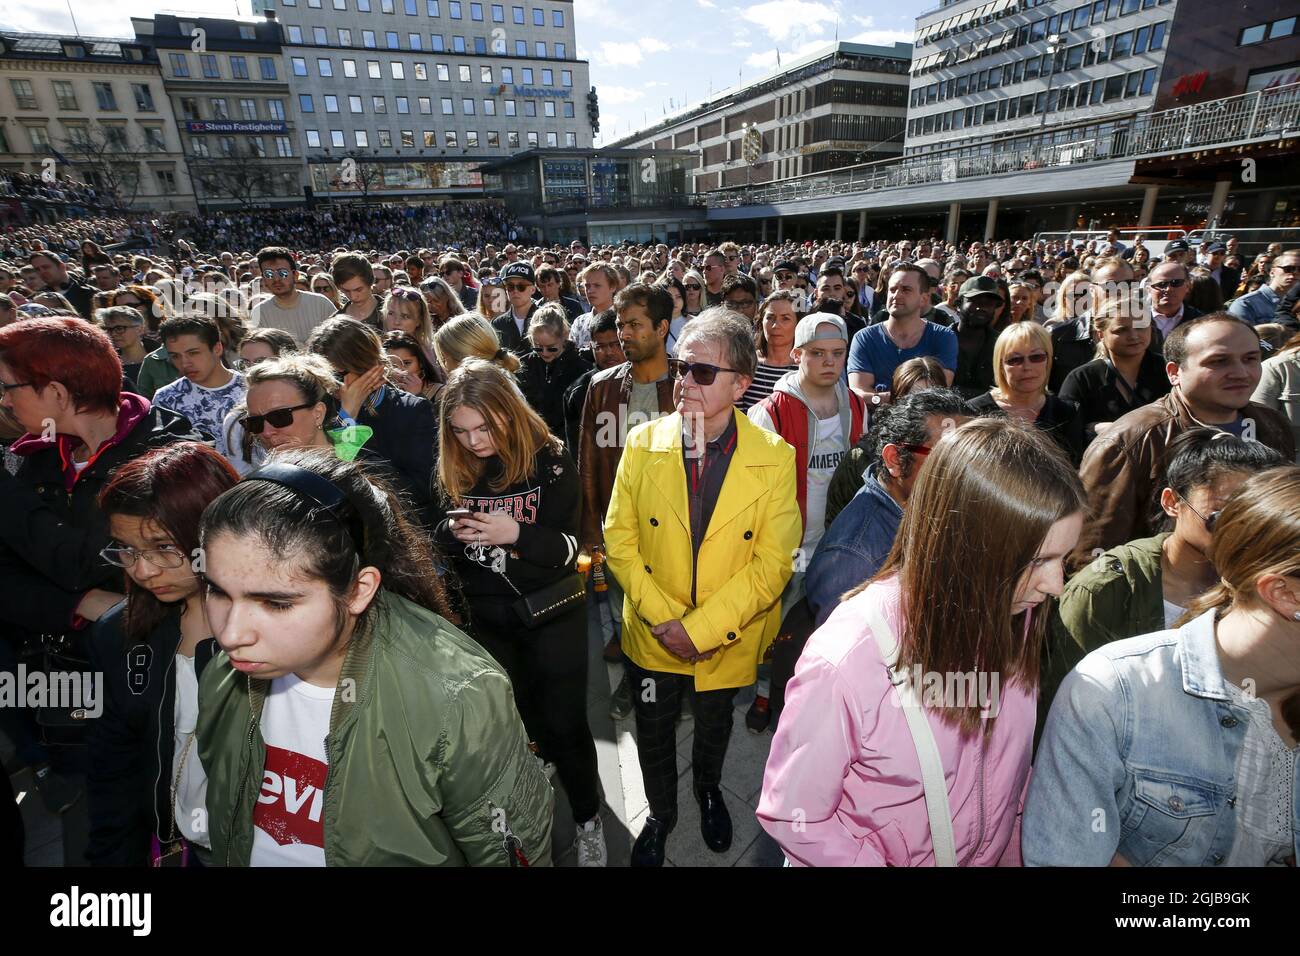 Centinaia di fan di Avicii si riuniscono per onorarlo al Torg di Sergels nel centro di Stoccolma, Svezia, il 21 aprile 2018. Il musicista svedese, DJ, remixer e produttore discografico Avicii (Tim Bergling) è stato trovato morto ieri, all'età di 28 anni. Il raduno è iniziato con un minuto di silenzio. Foto: Fredrik Persson / TT / 75906 Foto Stock